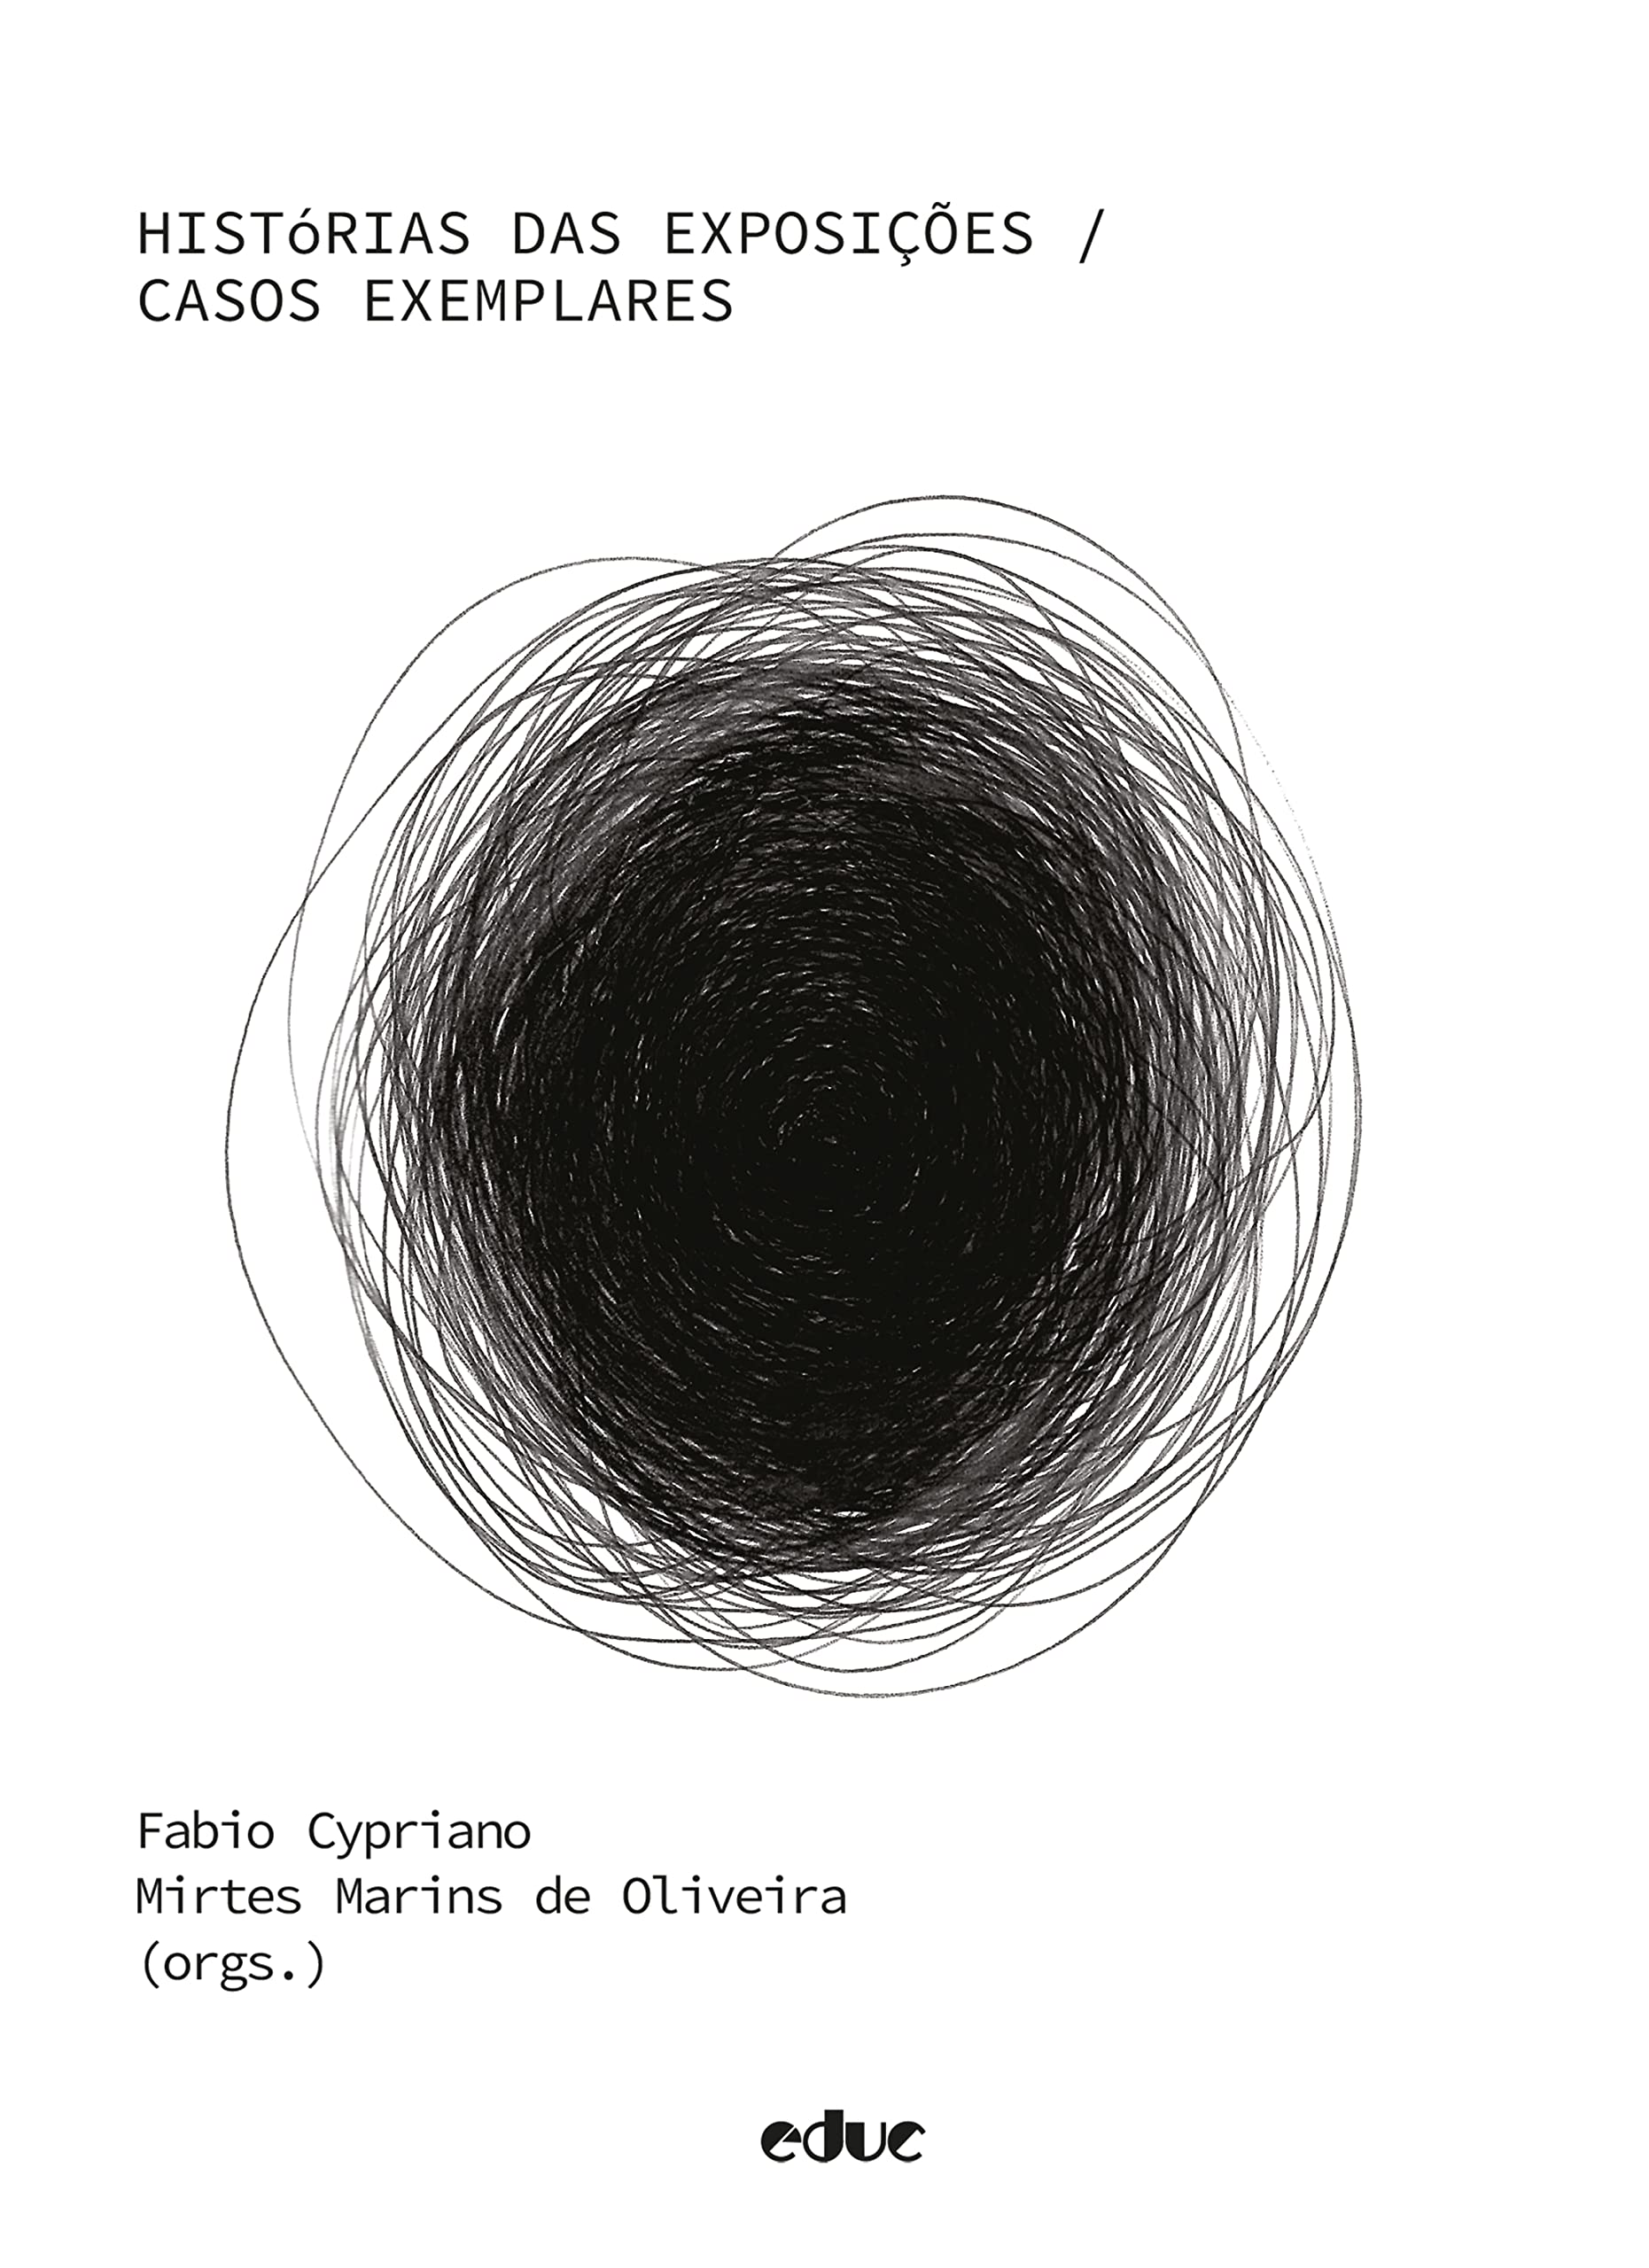 Histórias das exposições: Casos exemplares (Portuguese Edition)